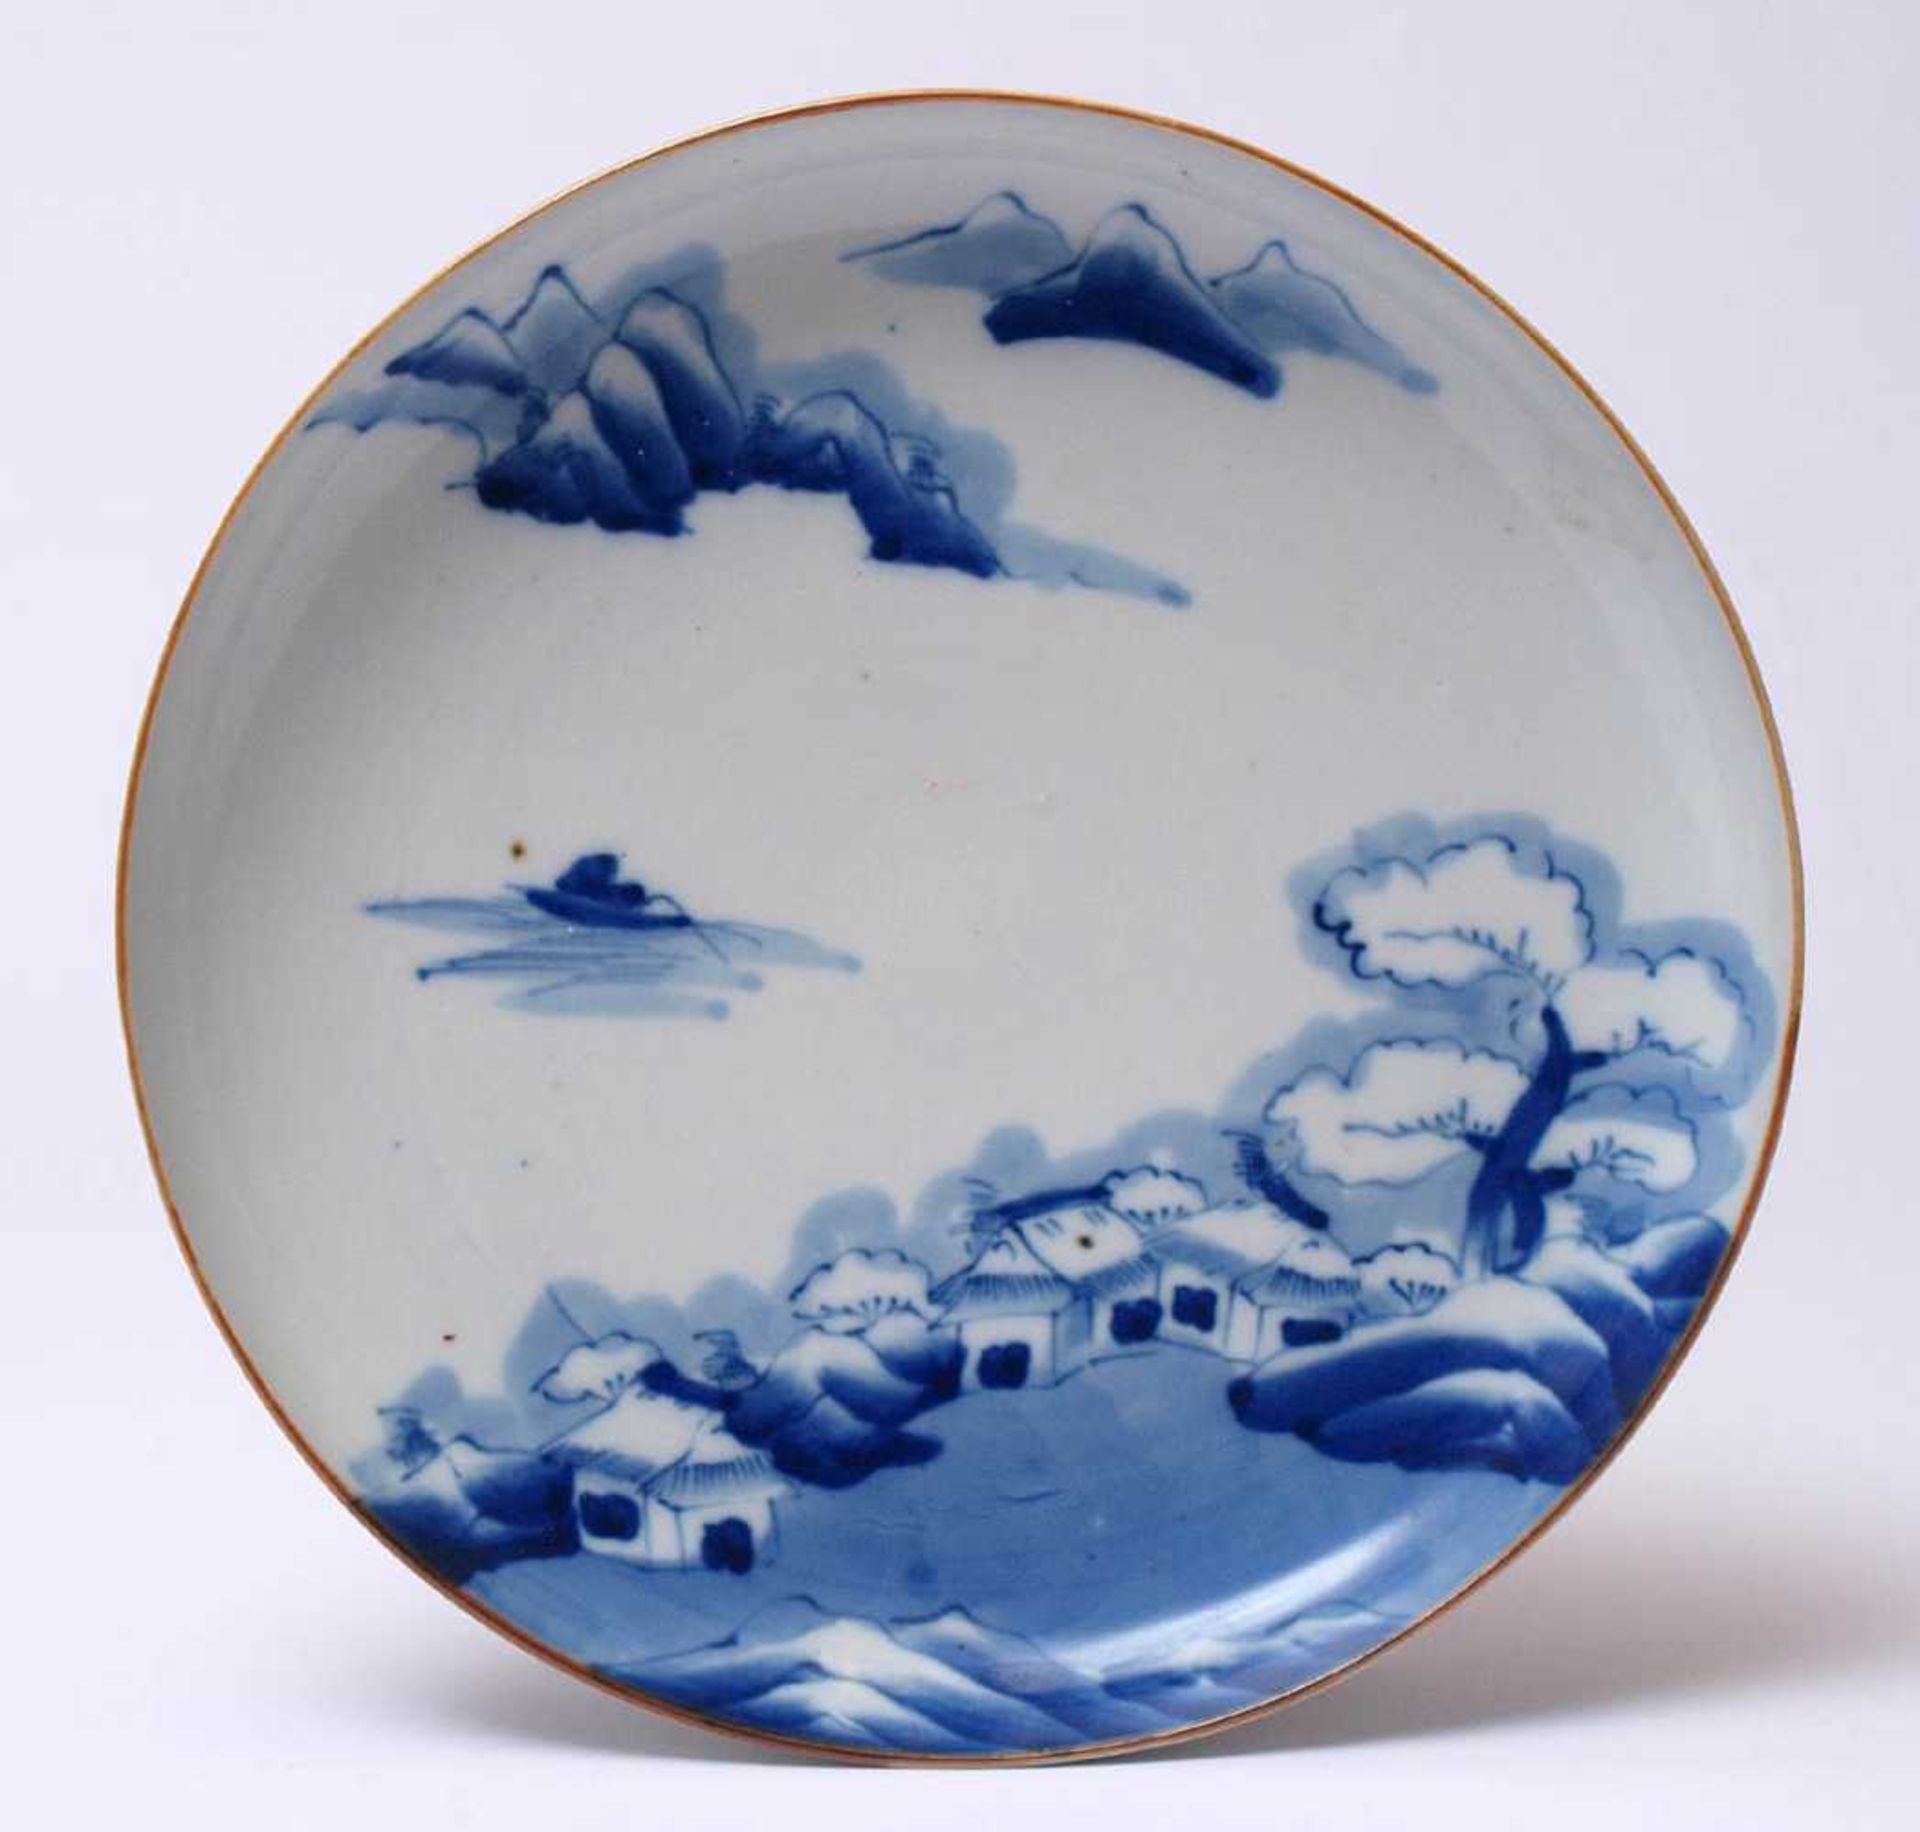 Schale, China, um 1900Tiefgemuldete Form. Über Fahne und Spiegel Landschaft in Blaumalerei. Durchm.